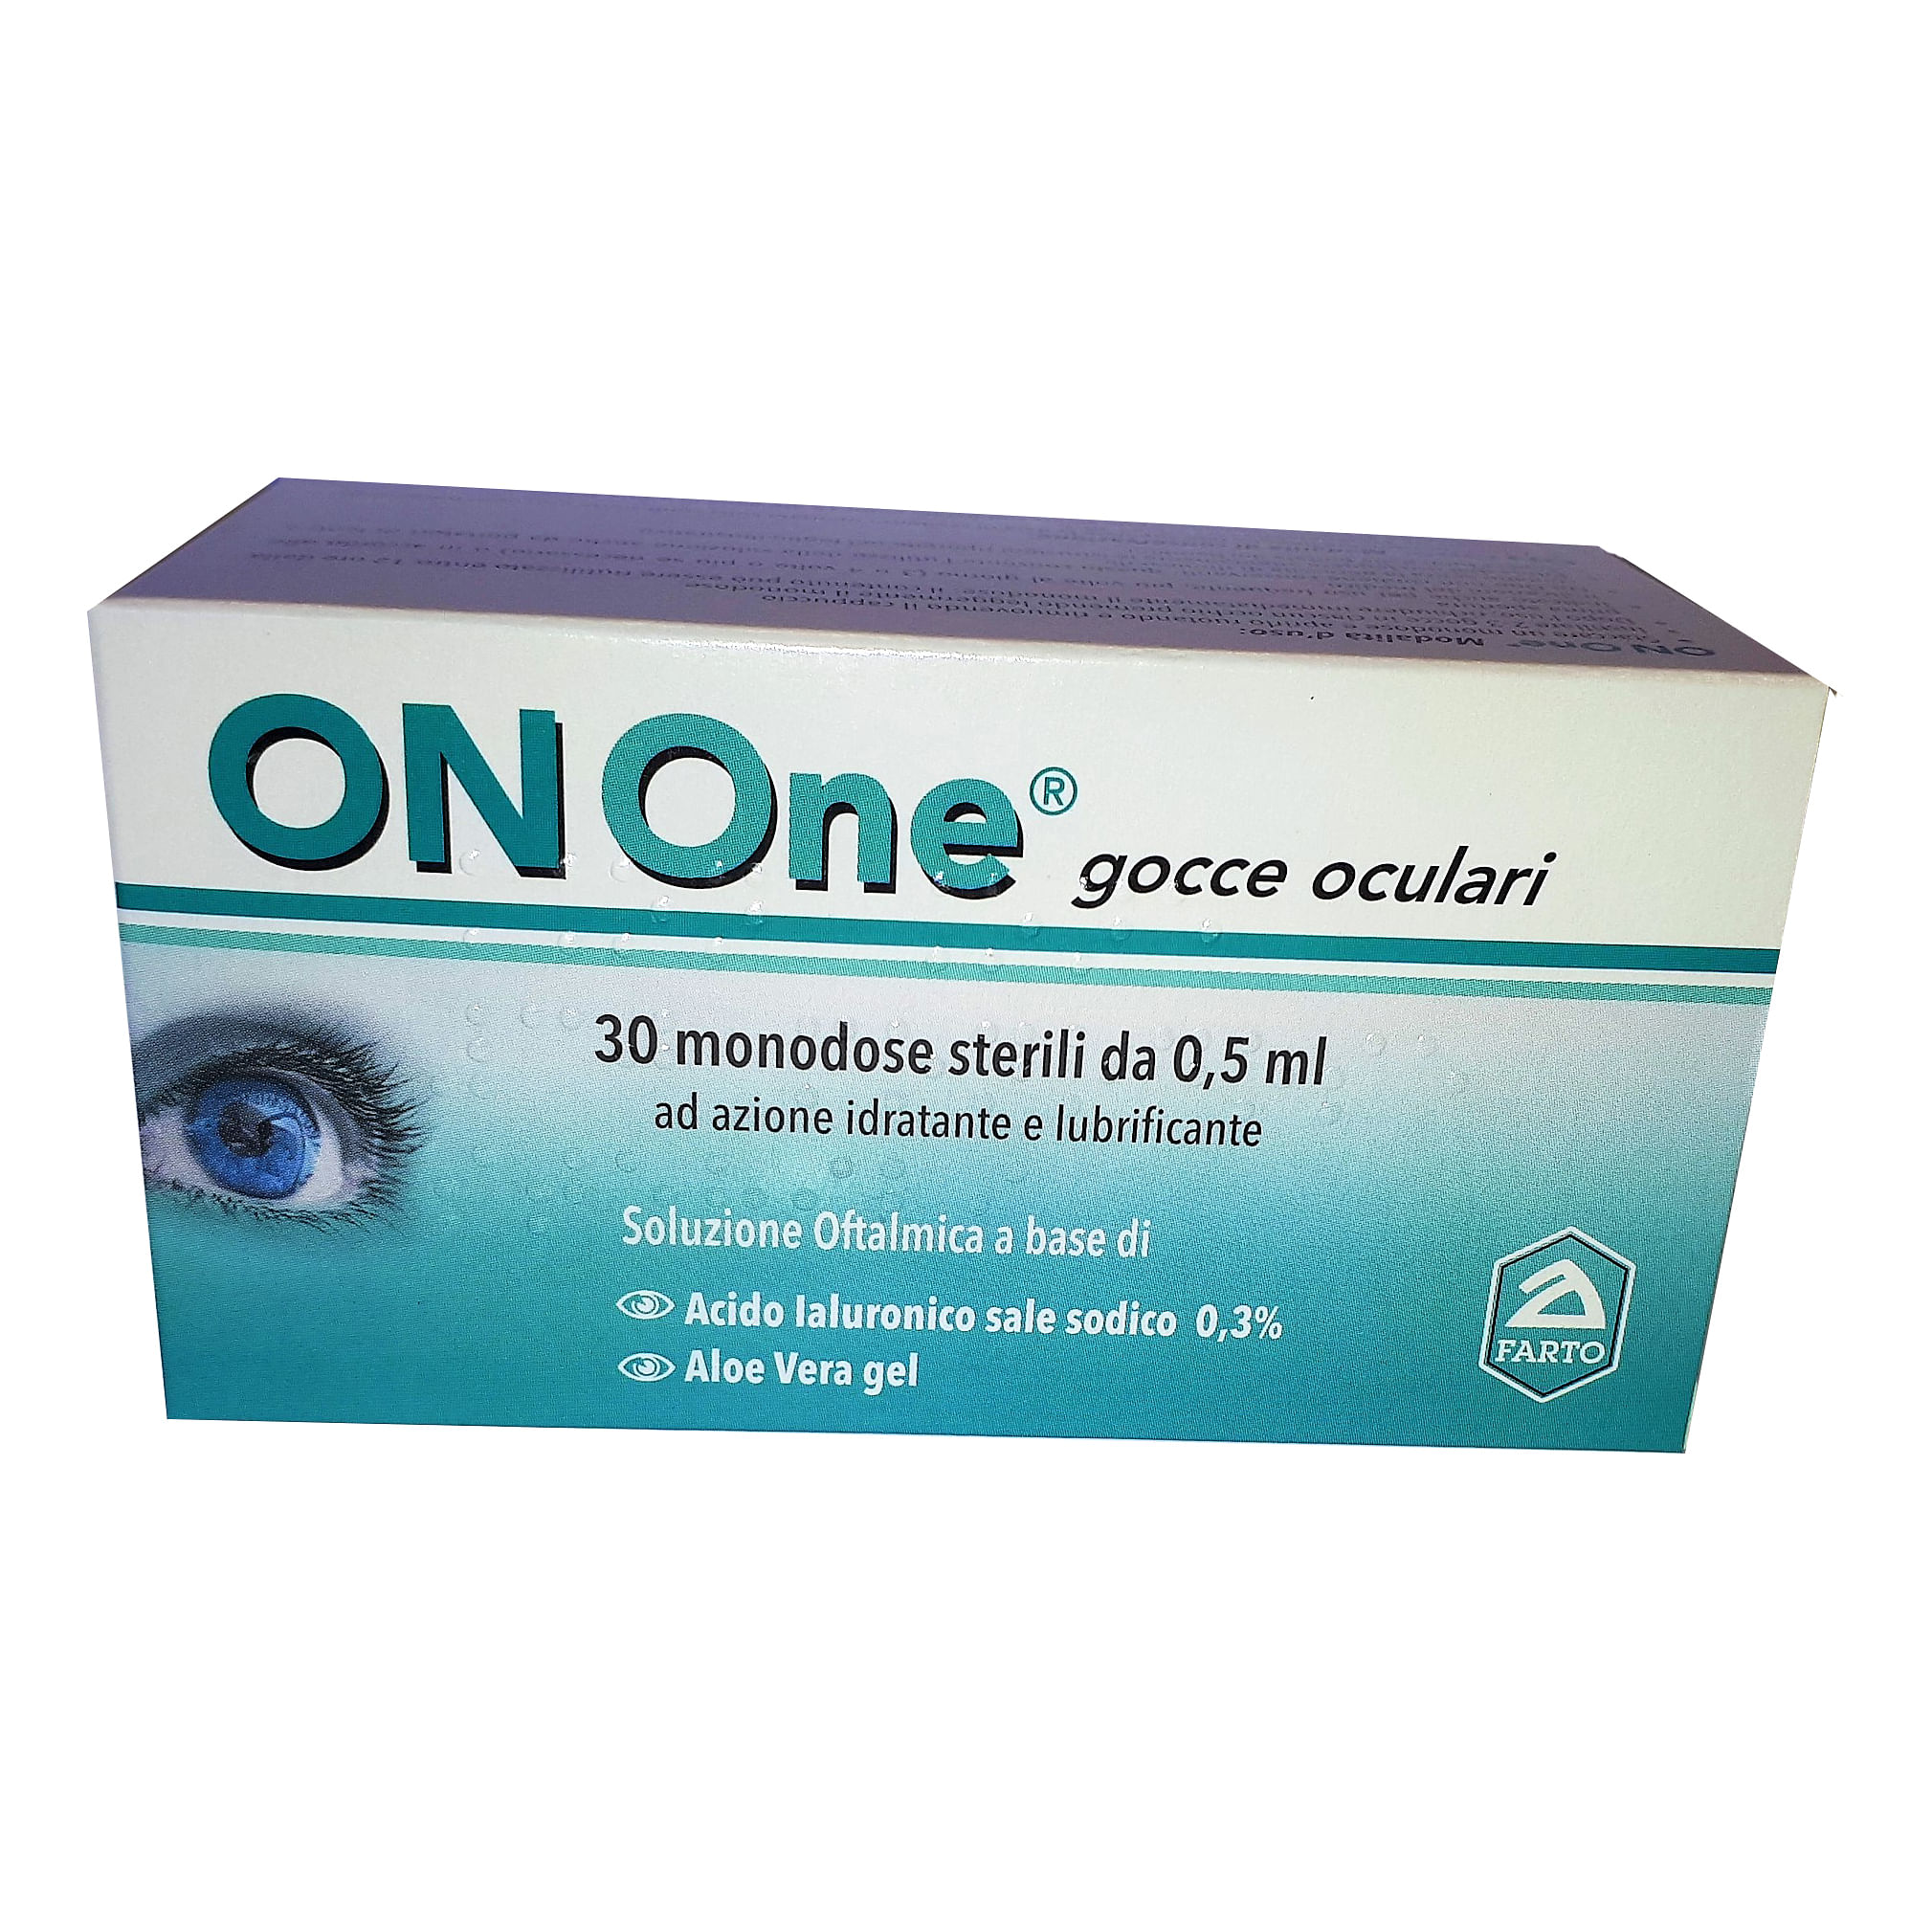 Download Onone 30 monodose sterili da 0,5 ml in 6 strip: Acquista con spedizione gratuita in 24-48 ore ...